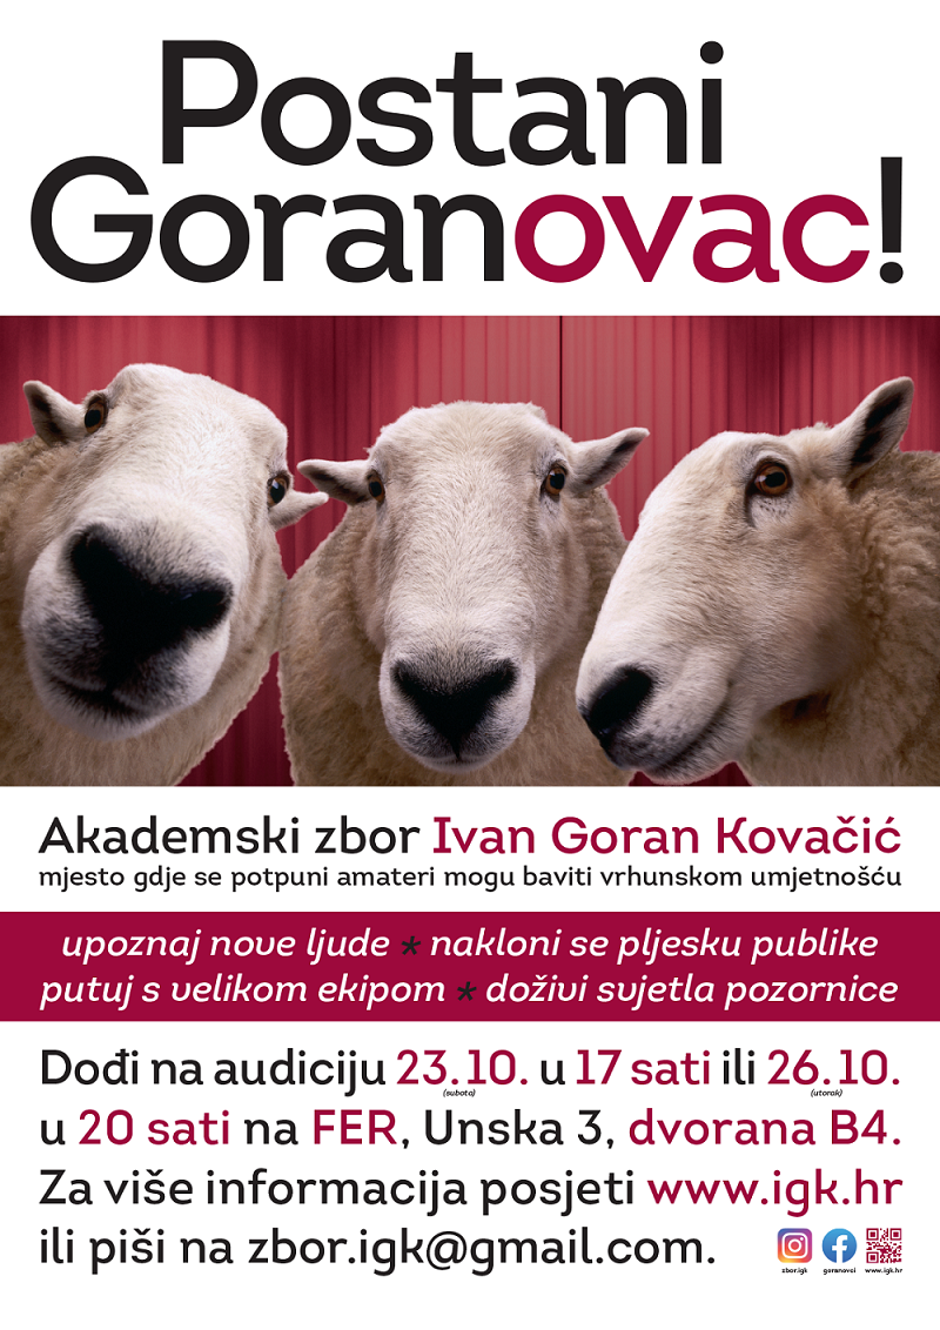 Akademski zbor Ivan Goran Kovačić